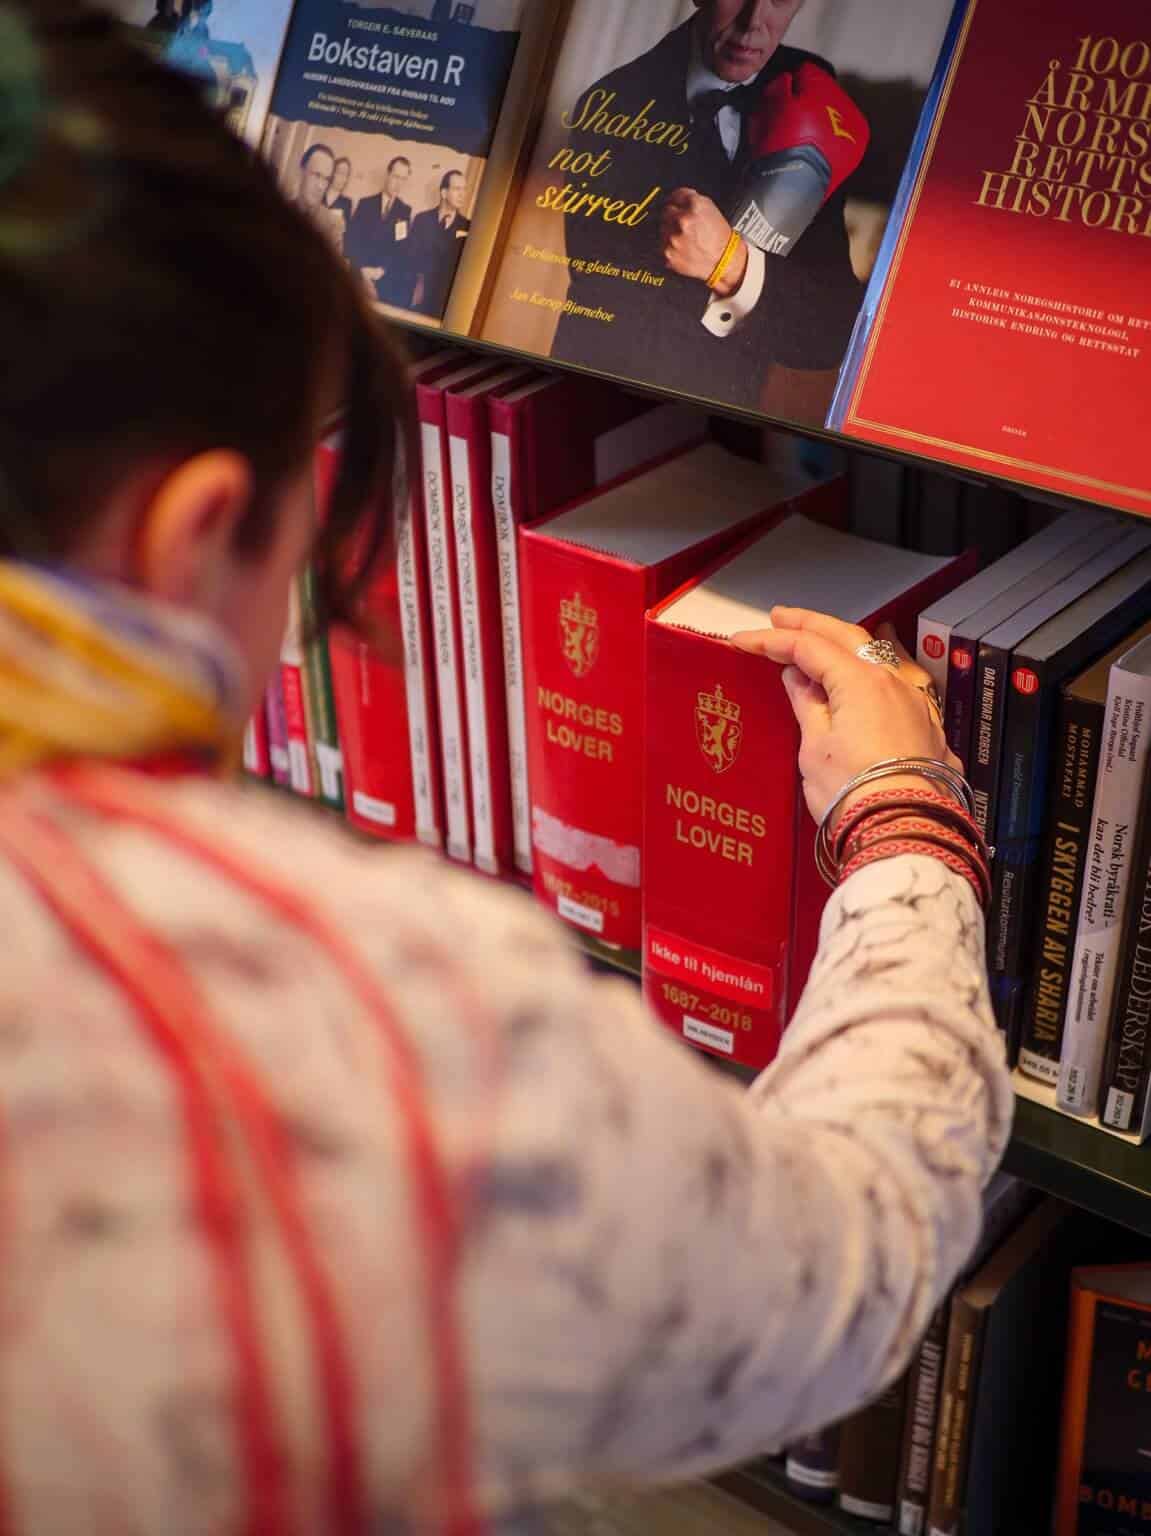 Bilde viser en samisk kvinne med samiske øredobber, ringer og armbånd som tar ut Norges lover fra en bokhylle i biblioteket.